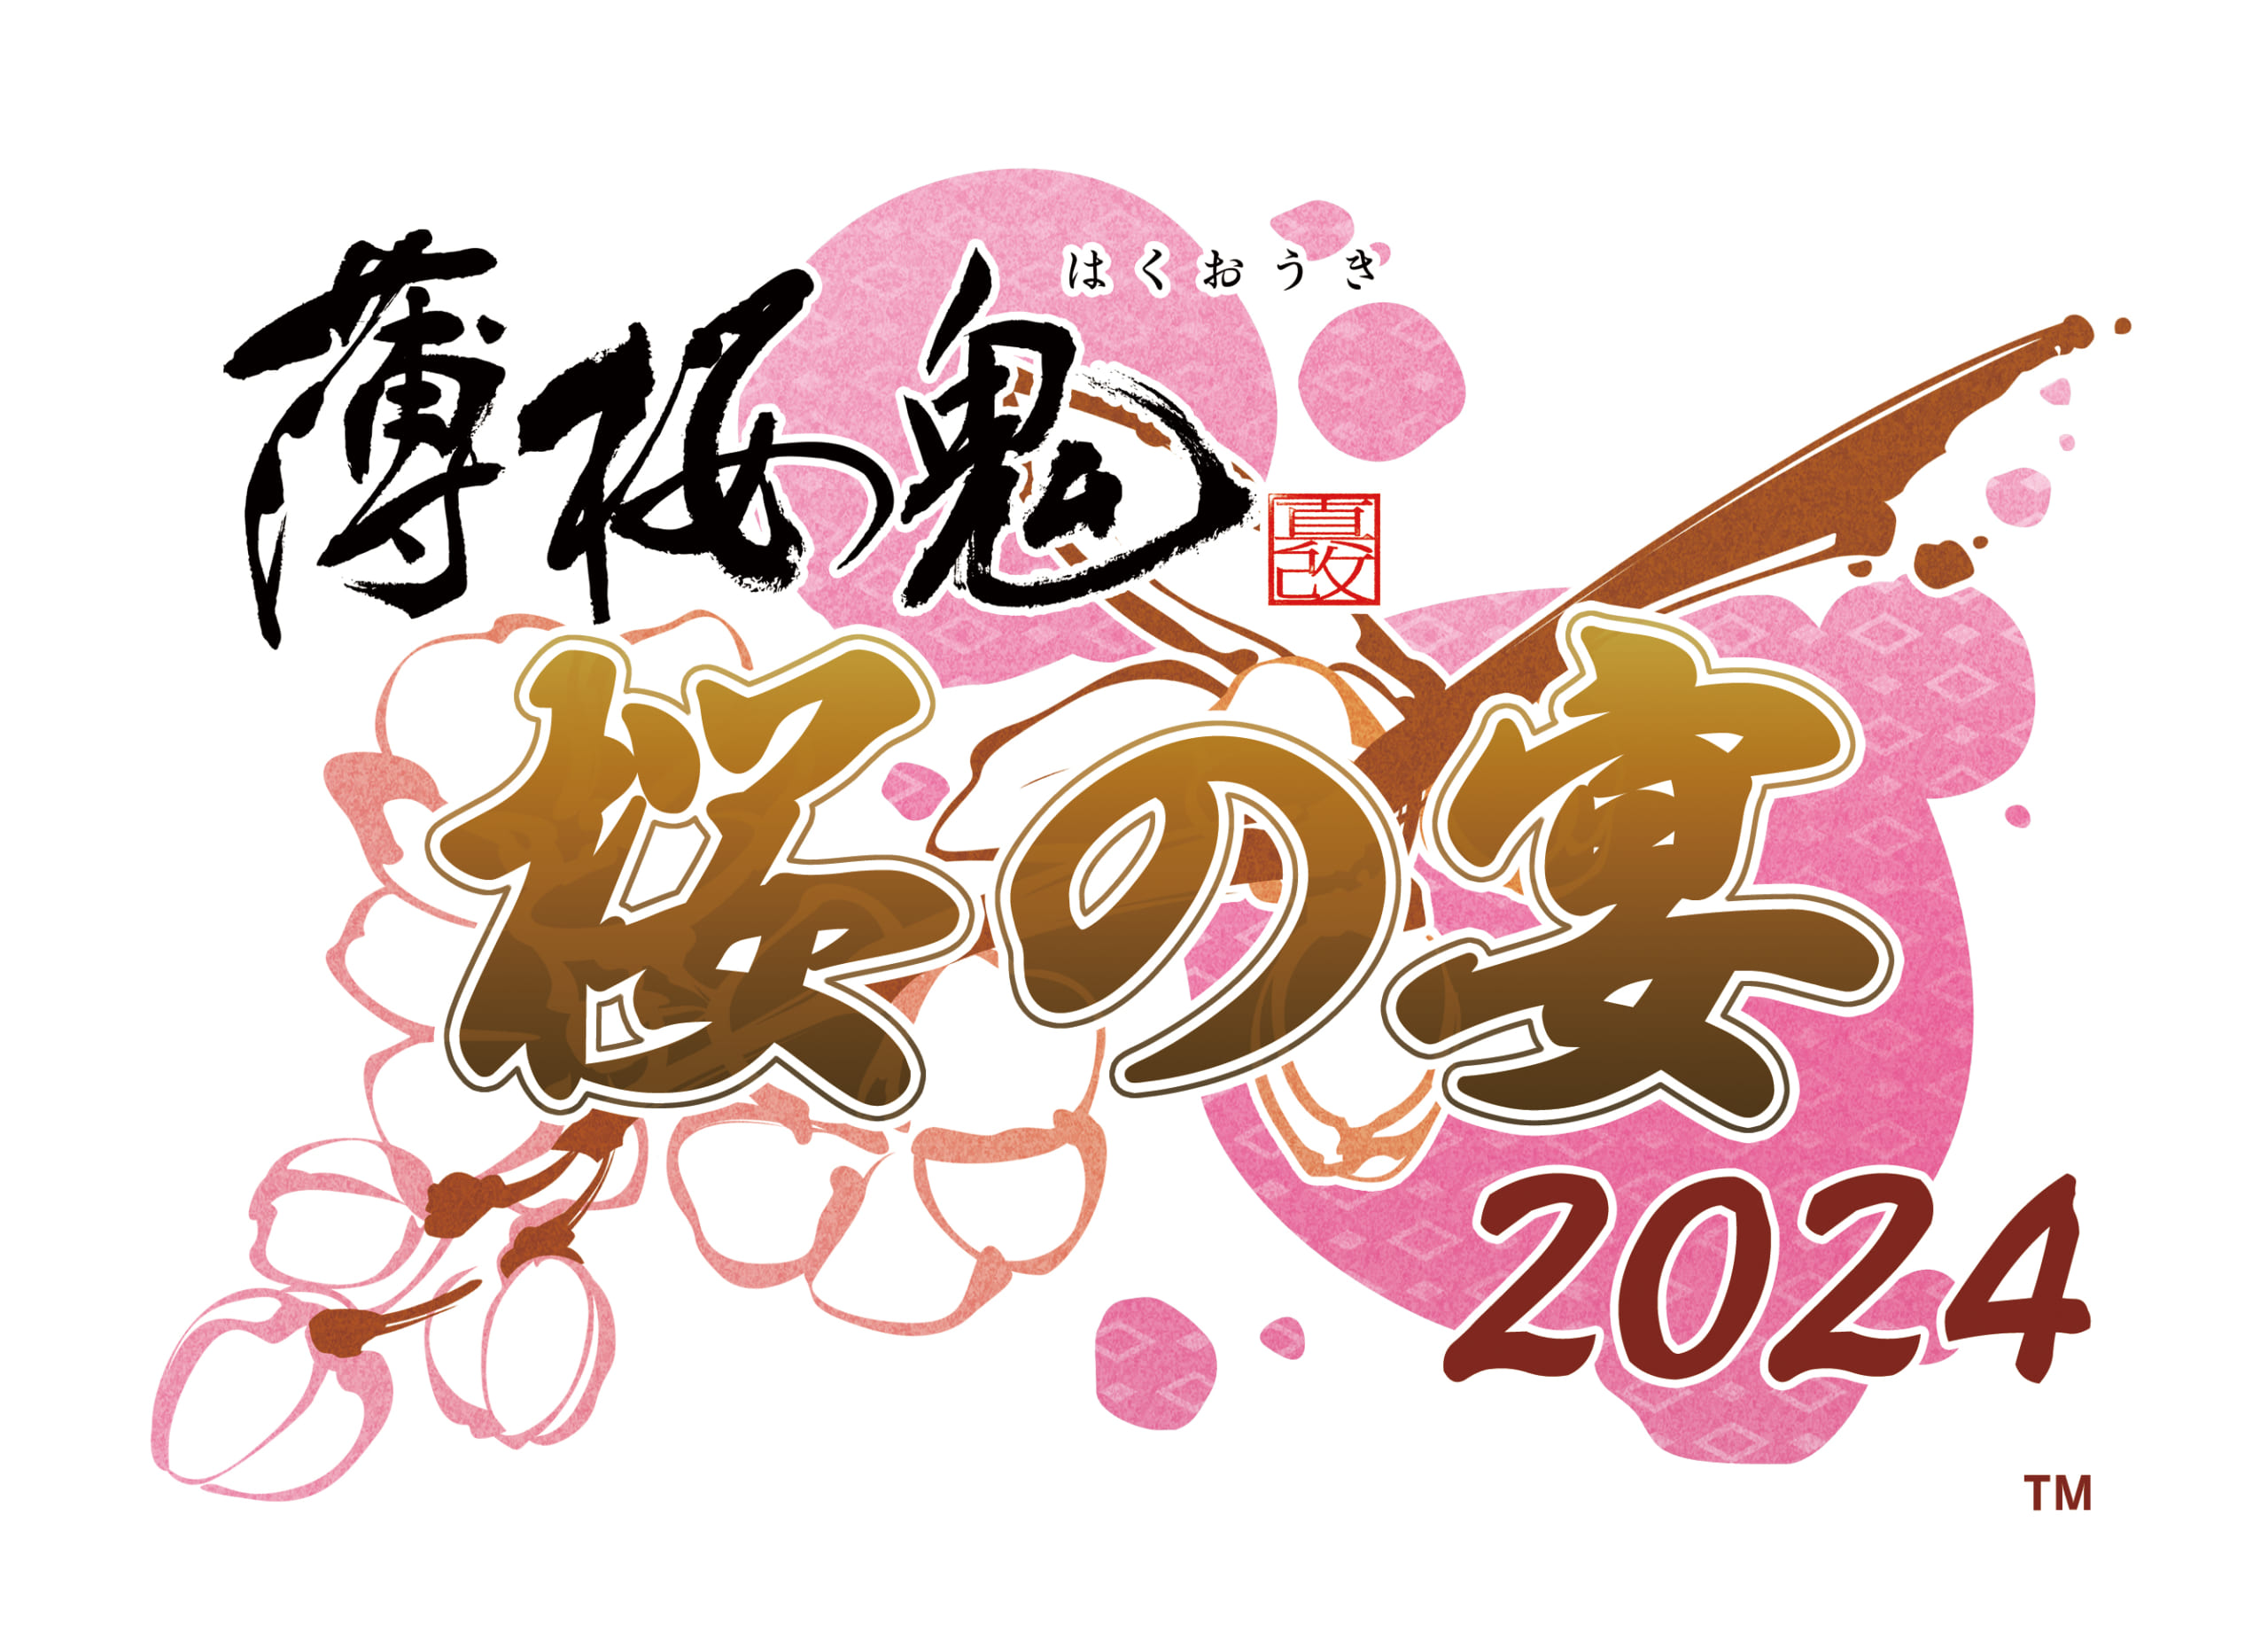 「薄桜鬼 真改 桜の宴2024」